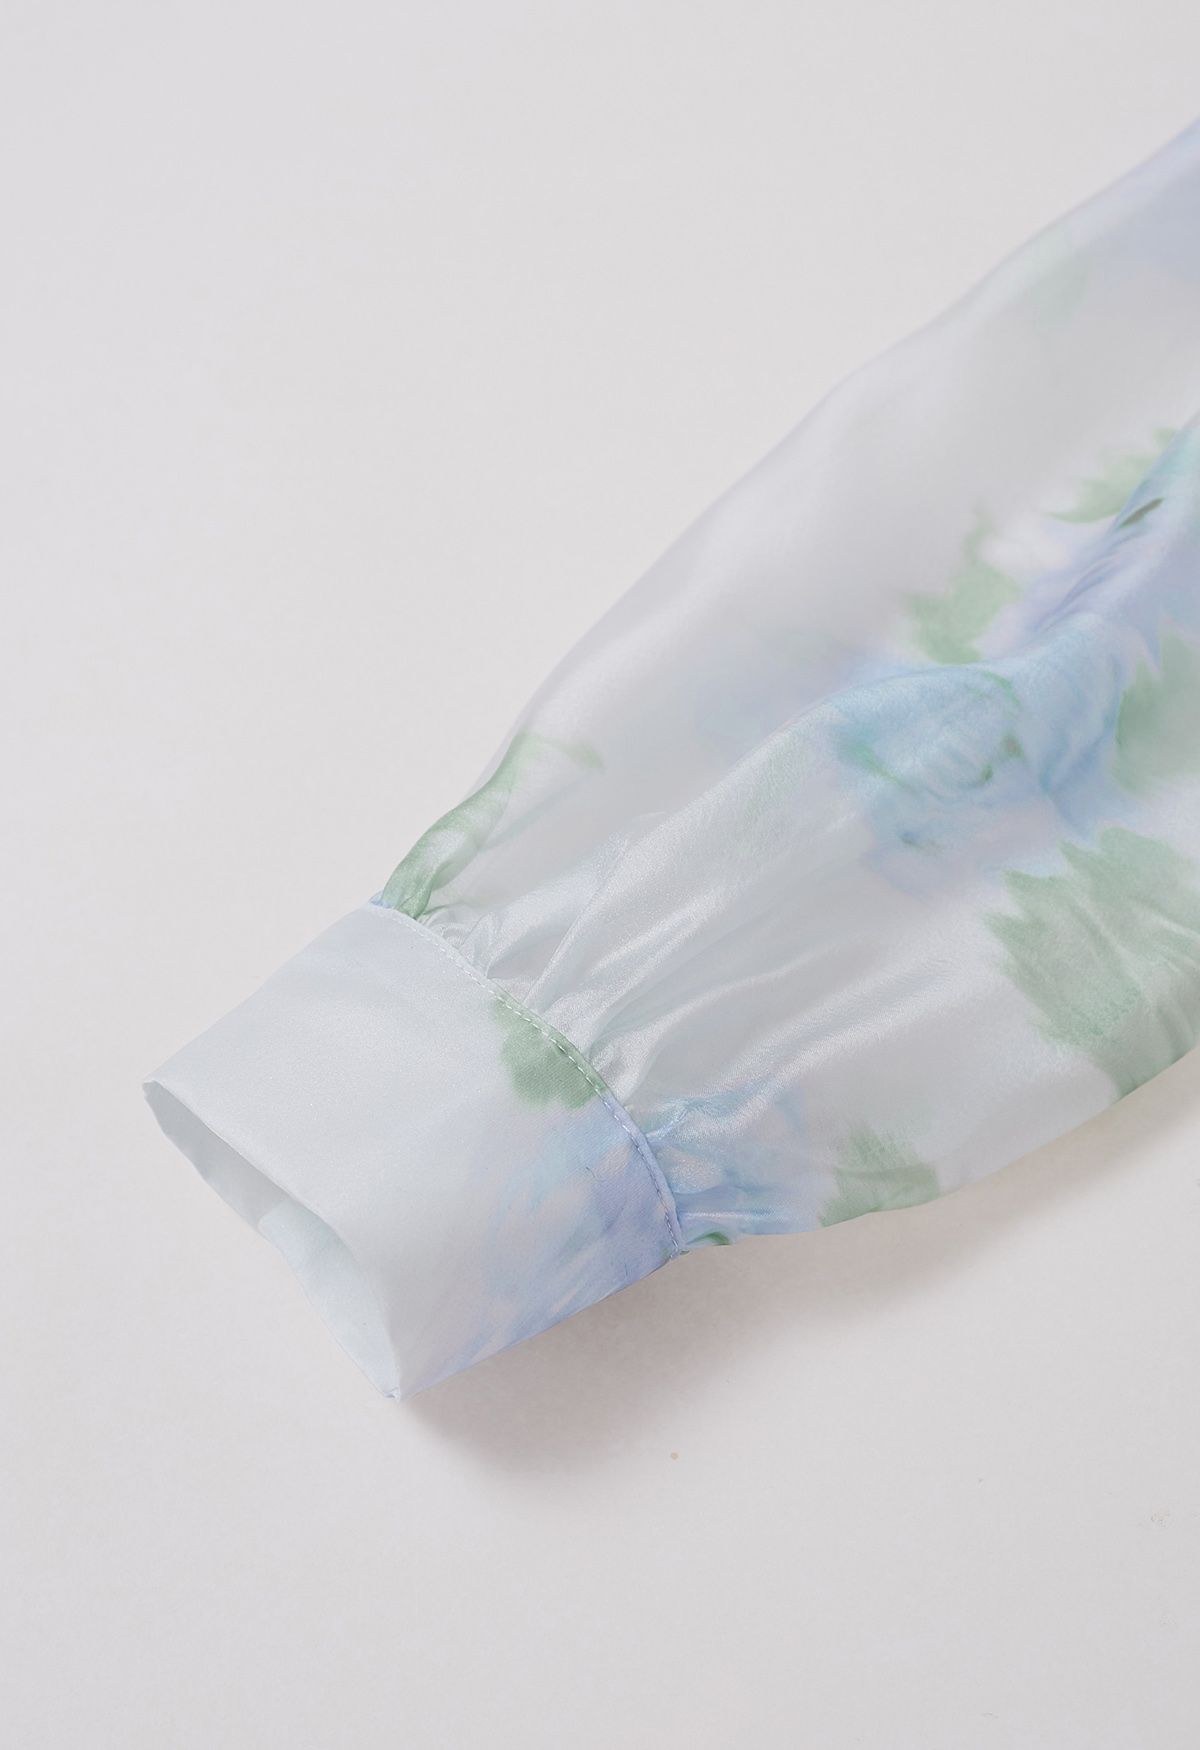 قميص شفاف بعقدة من الزهور المائية جذاب باللون الأزرق